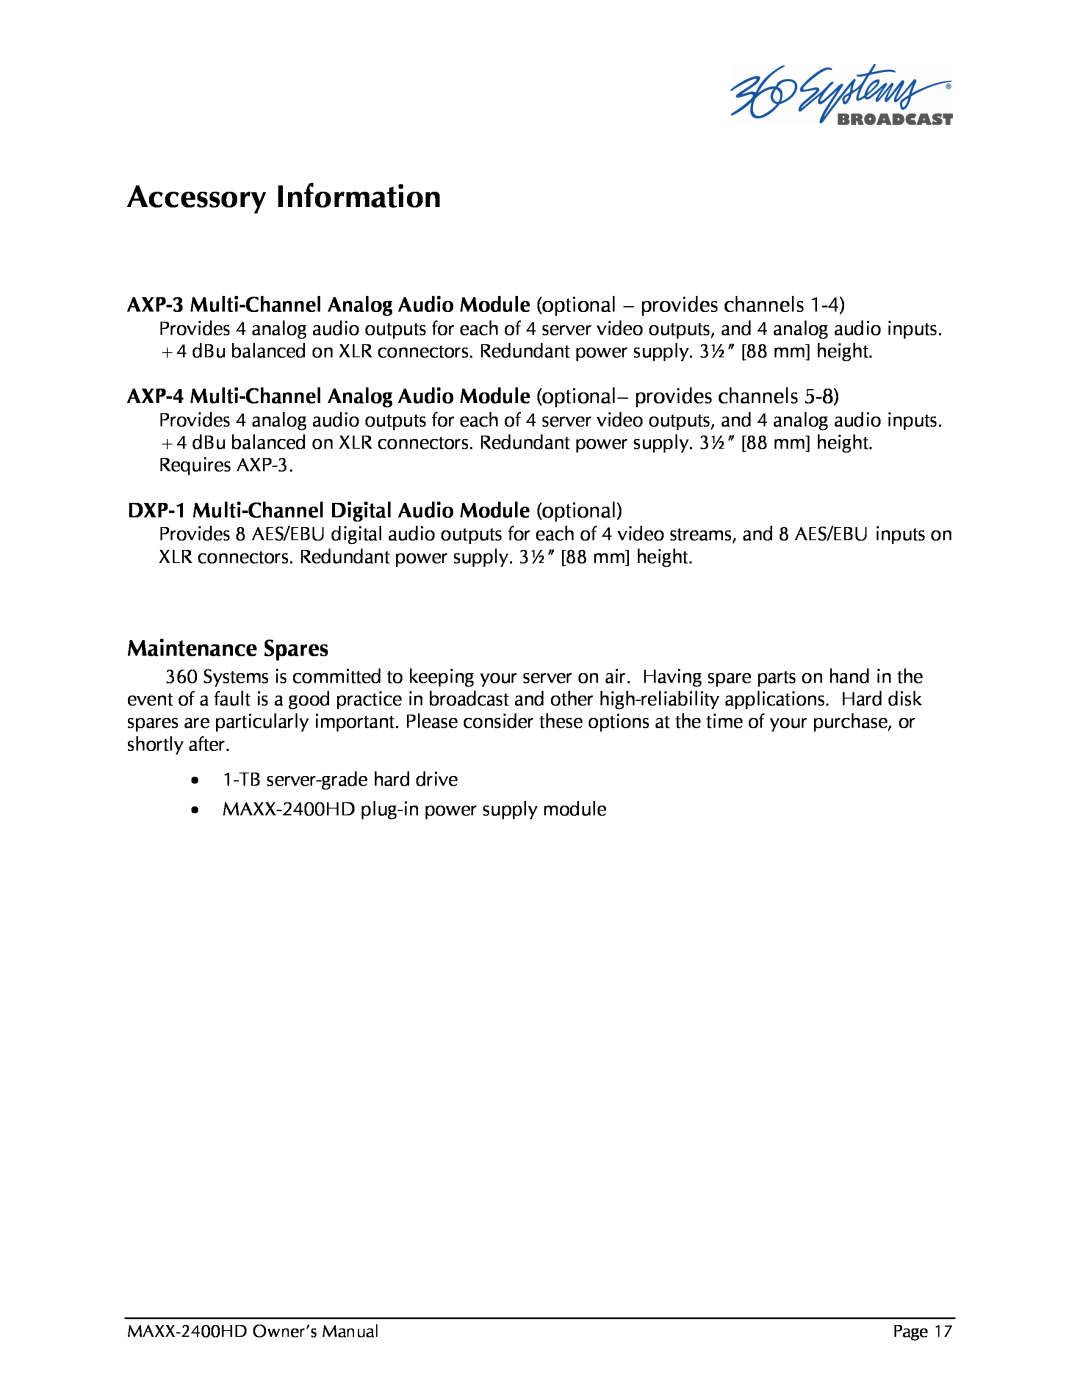 Maxxsonics MAXX-2400HD manual Accessory Information, Maintenance Spares 